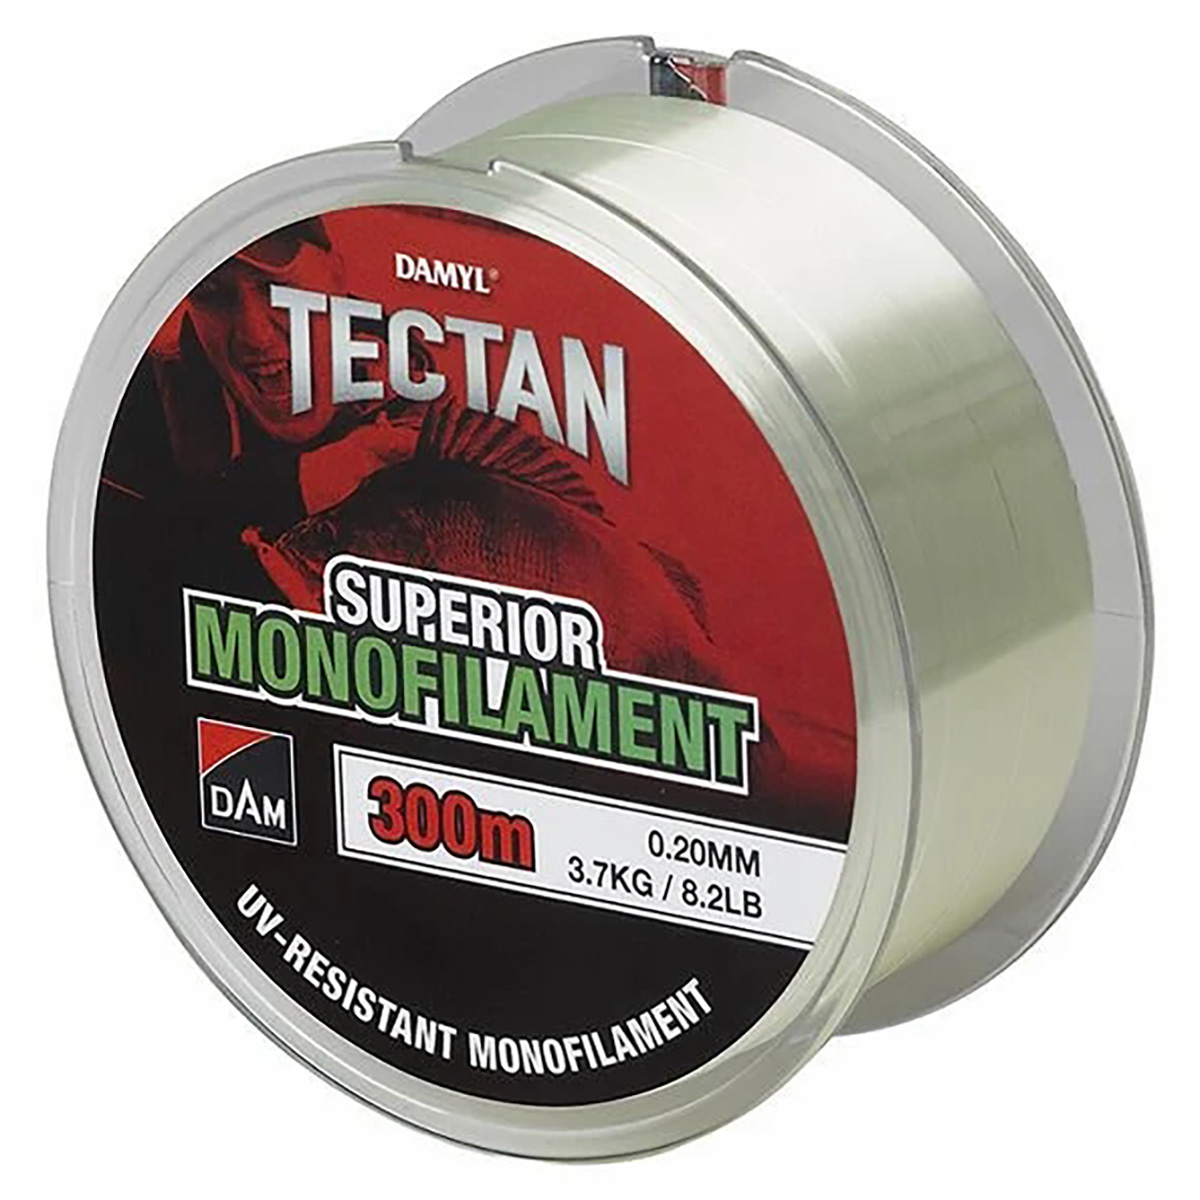 Dam Tectan Superior 300mt Green Transparan Renk Monofilament Misina,300 metre uzunluğunda dam kalitesinde yüksek düğüm mukavemetine sahip oldukça yumuşak monofilament misina serisi